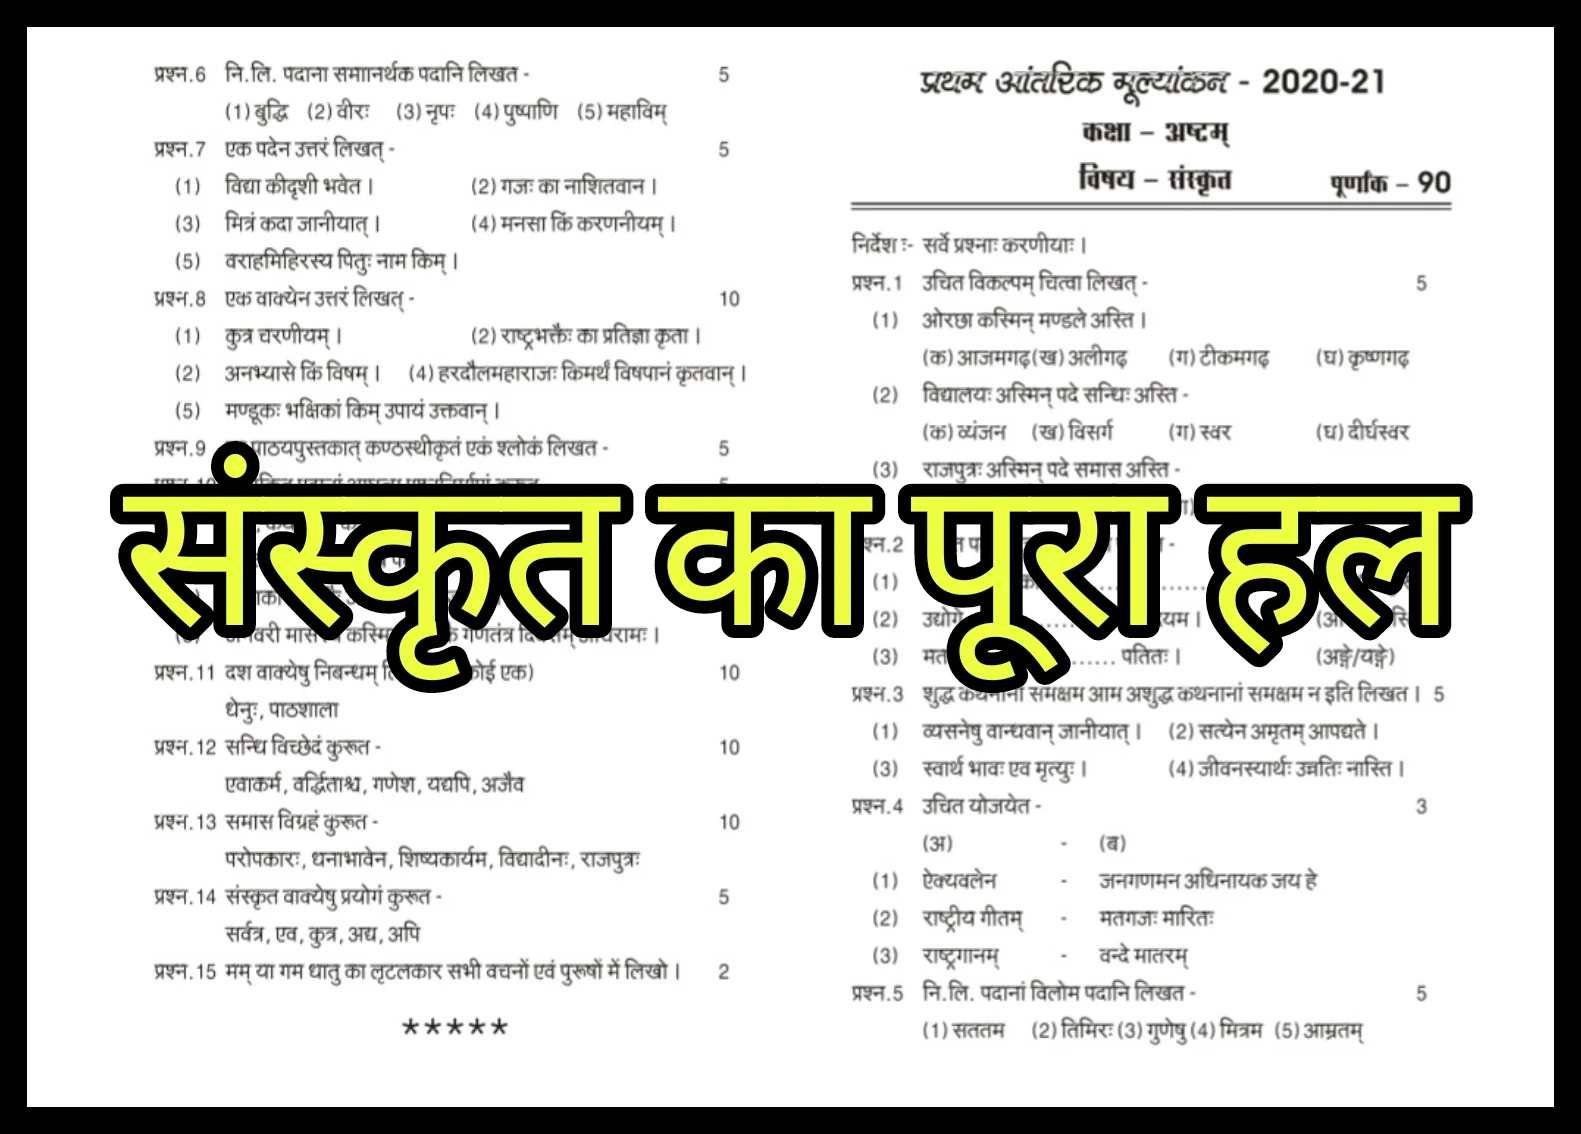 First Internal Exams 2020-21 class 8 Subject Sanskrit solution: दोस्तों यदि आप कक्षा 8 वीं के प्रथम आंतरिक मूल्यांकन - 2020-21 का हल खोज रहे हैं तो आप बिलकुल सही जगह पर पहुंच चुके हैं। यहाँ हमने प्रथम आंतरिक मूल्यांकन - 2020-21 कक्षा 8 विषय संस्कृत पूरा हल प्रस्तुत किया है। इस पोस्ट का उद्देश्य केवल विद्यार्थियों में डिजिटल लर्निंग की रुचि बढ़ाना है। हम नकल या चोरी के सख्त खिलाफ है।